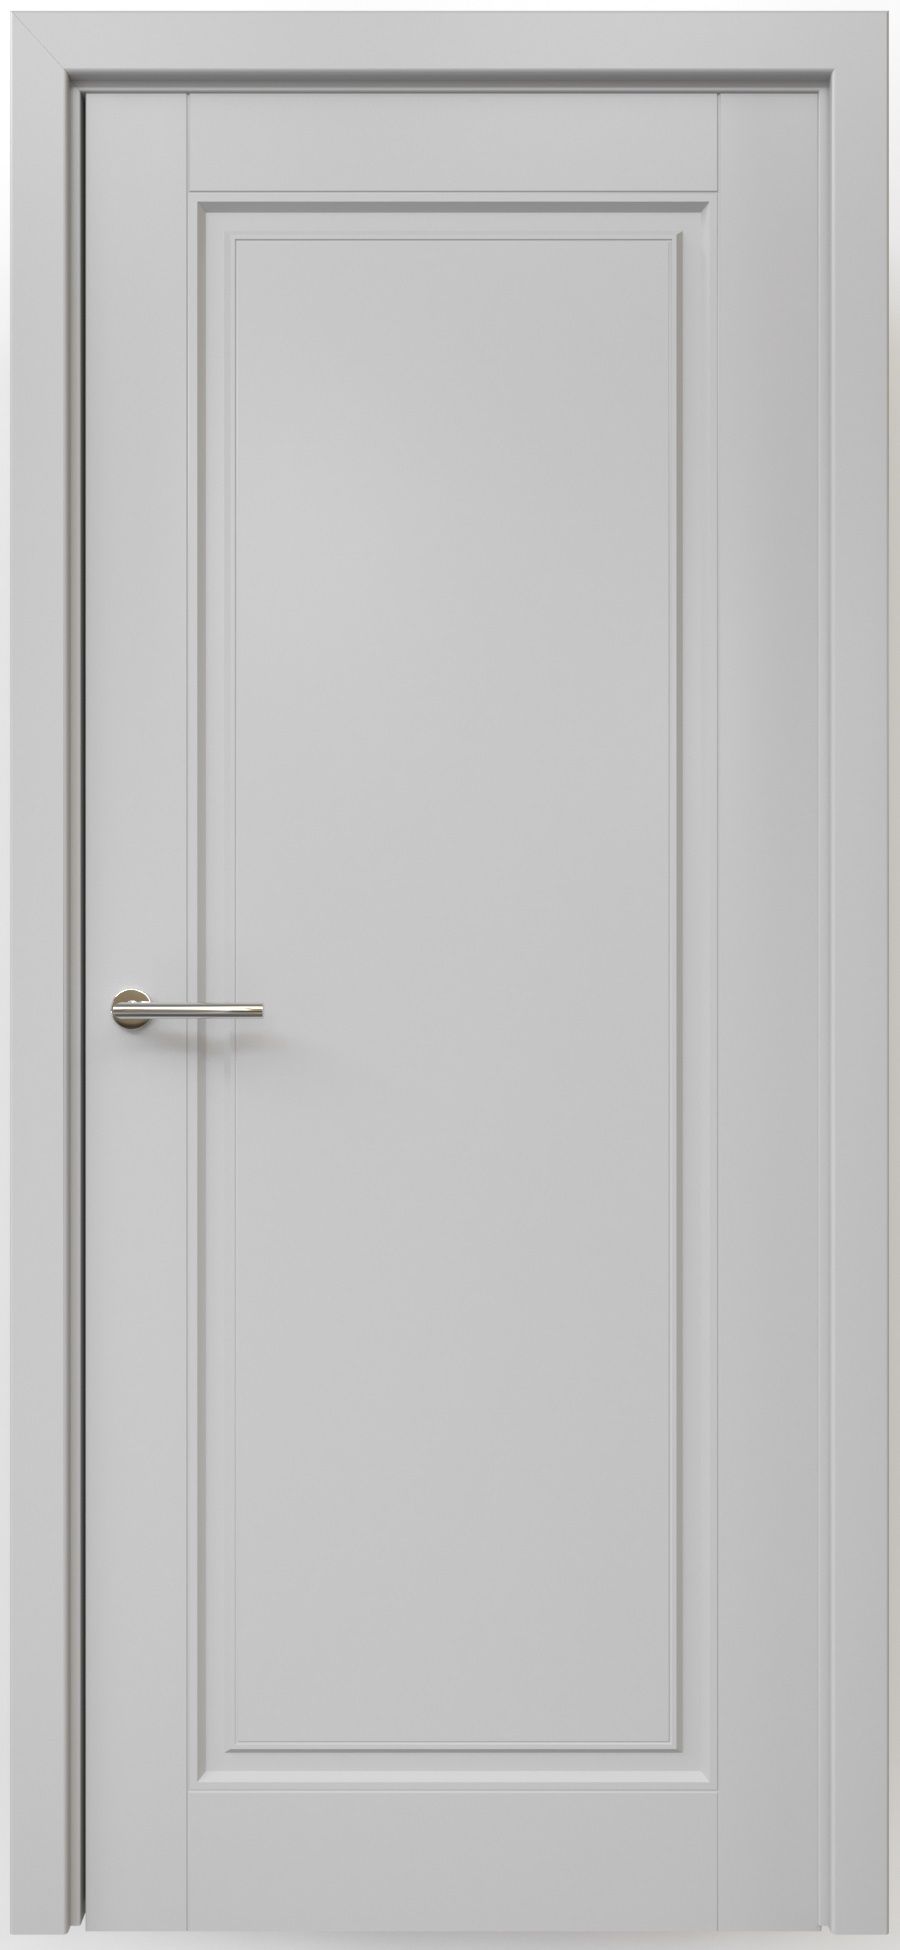 Полотно дверное глухое СХЕМА Эмаль-1 ПГ Эмаль Классика-1 600 серый (защелка маг.)